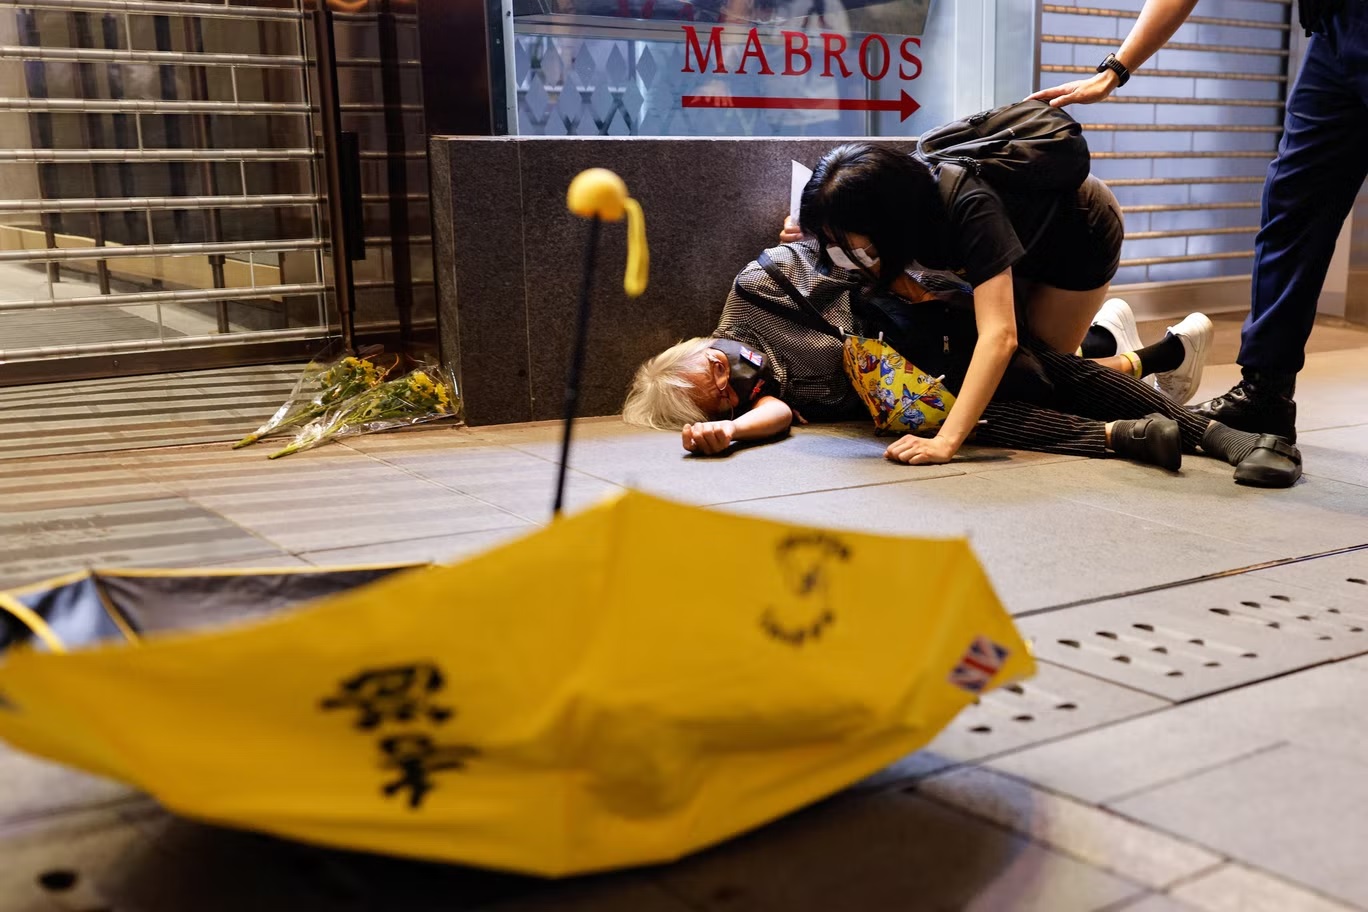 أحد المحتجين يرقد على الأرض في هونغ كونغ بعد دفعه خلال تظاهرات ضد "كوفيد" في البر الرئيس للصين (رويترز)